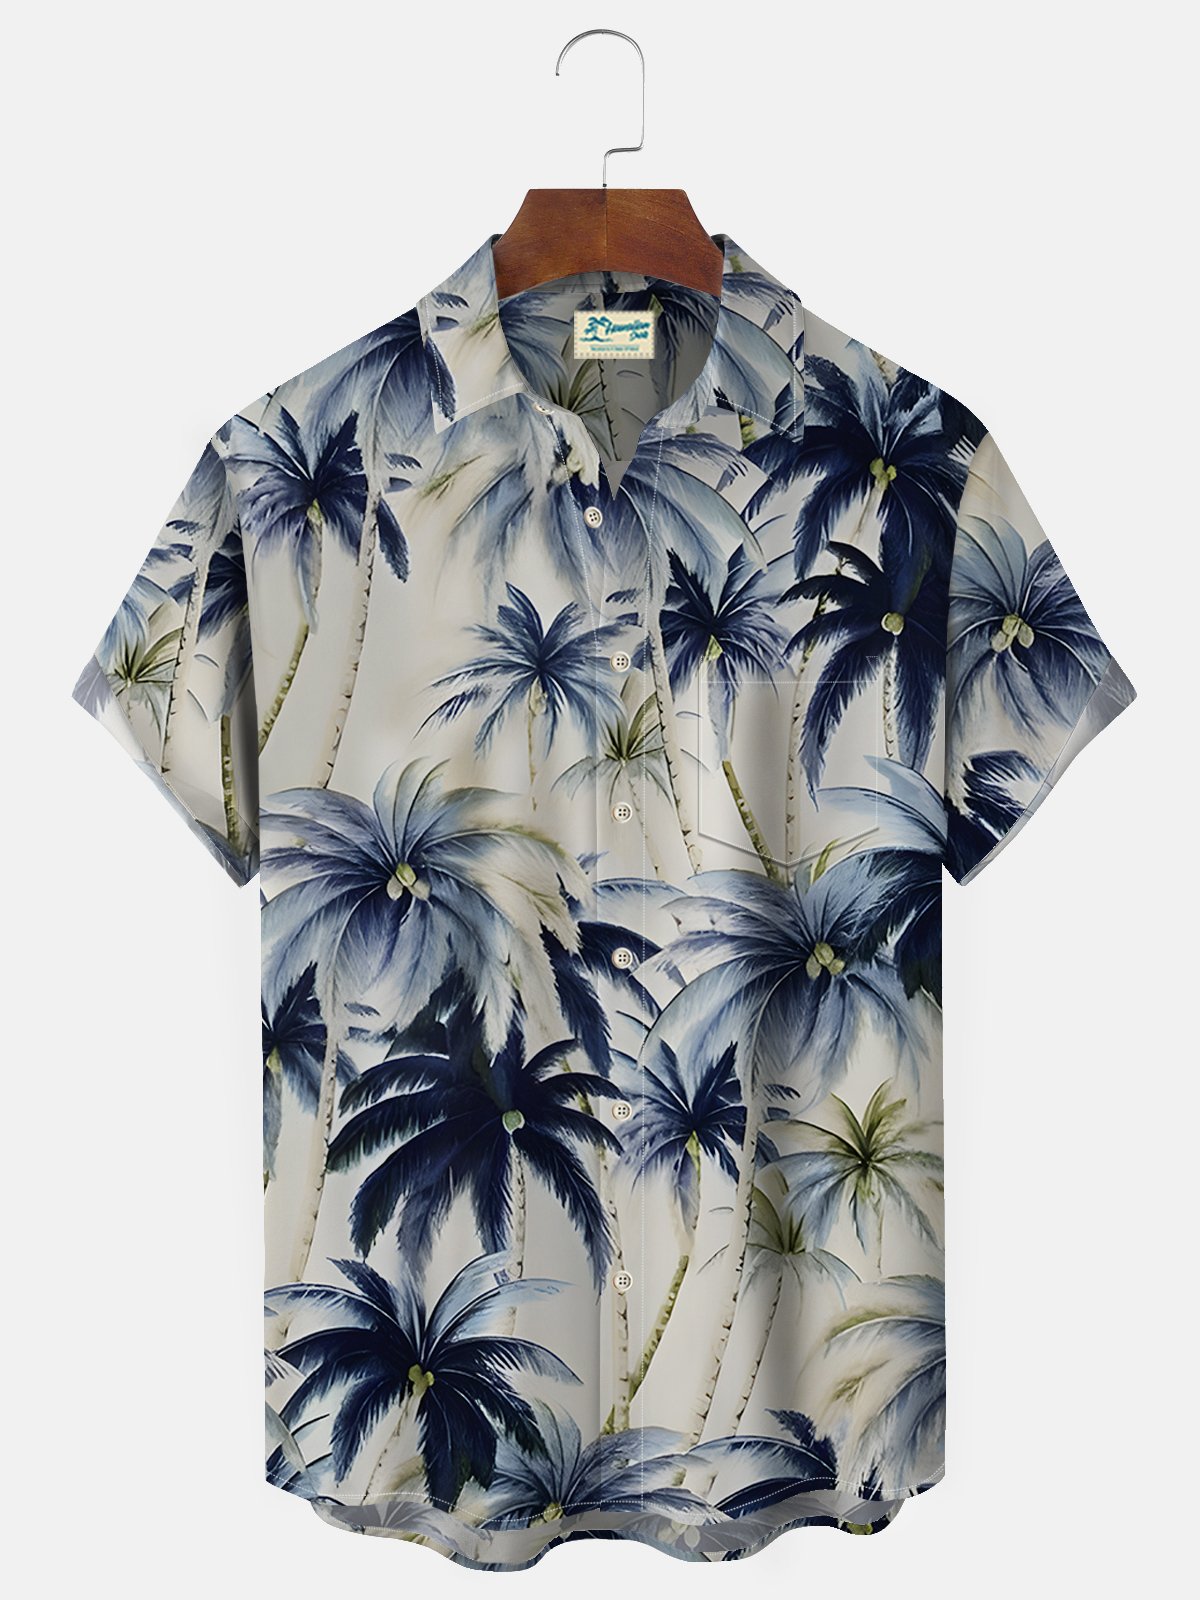 Royaura Beach Vacation Khaki Men's Hawaiian Shirts Vintage Coconut Tree Stretch Easy Care Pocket Camp Shirts